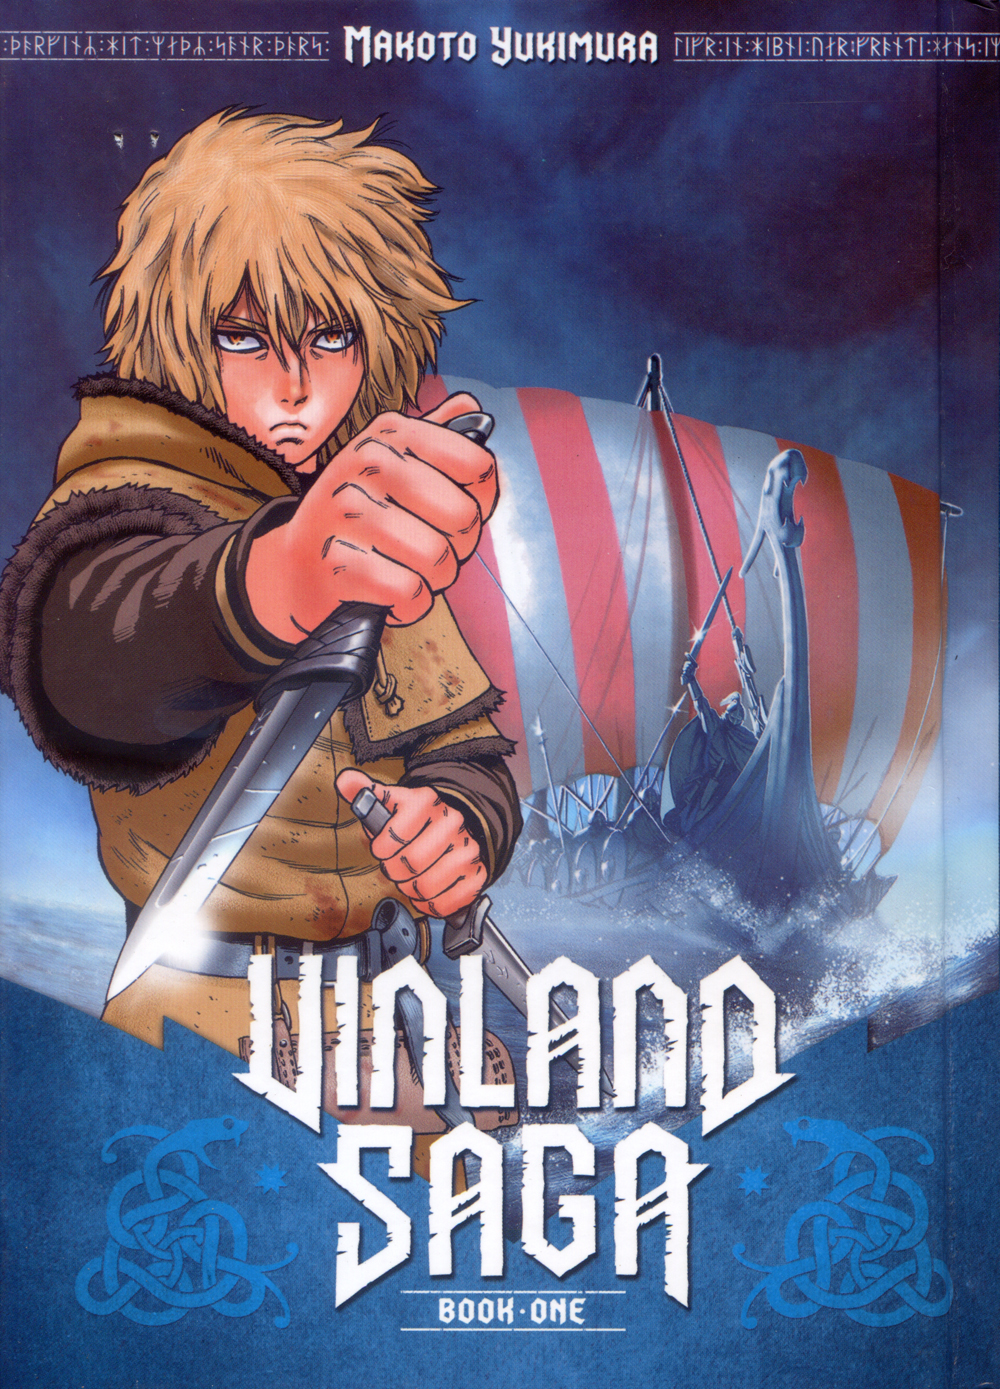 Vinland Saga Anime Poster